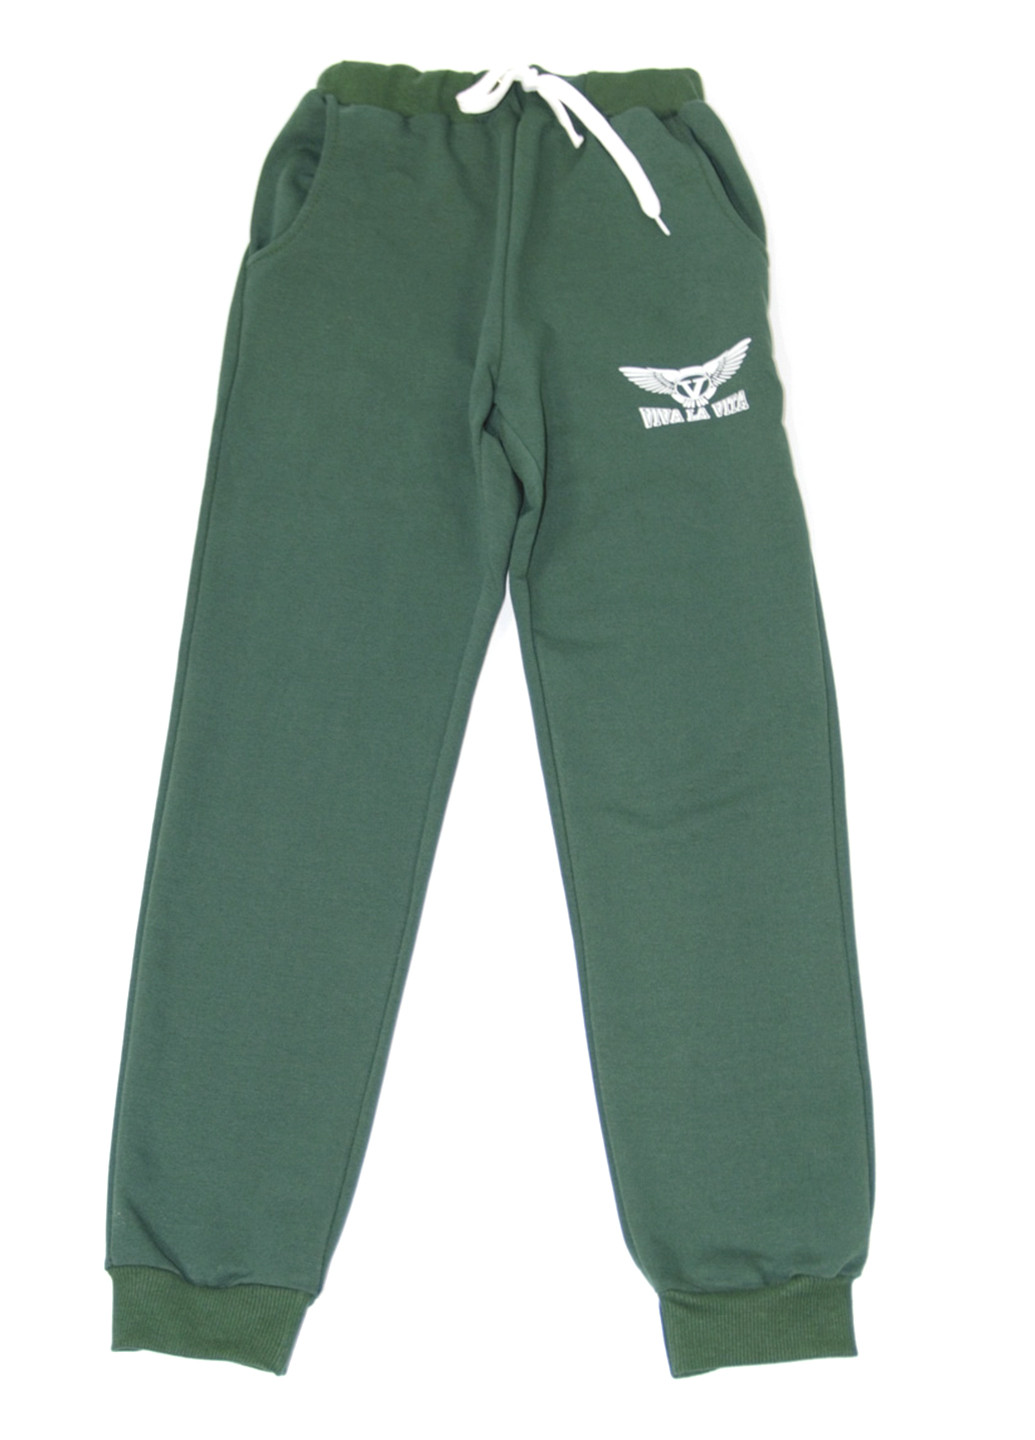 Темно-зеленые спортивные демисезонные брюки прямые VIVA LA VITA